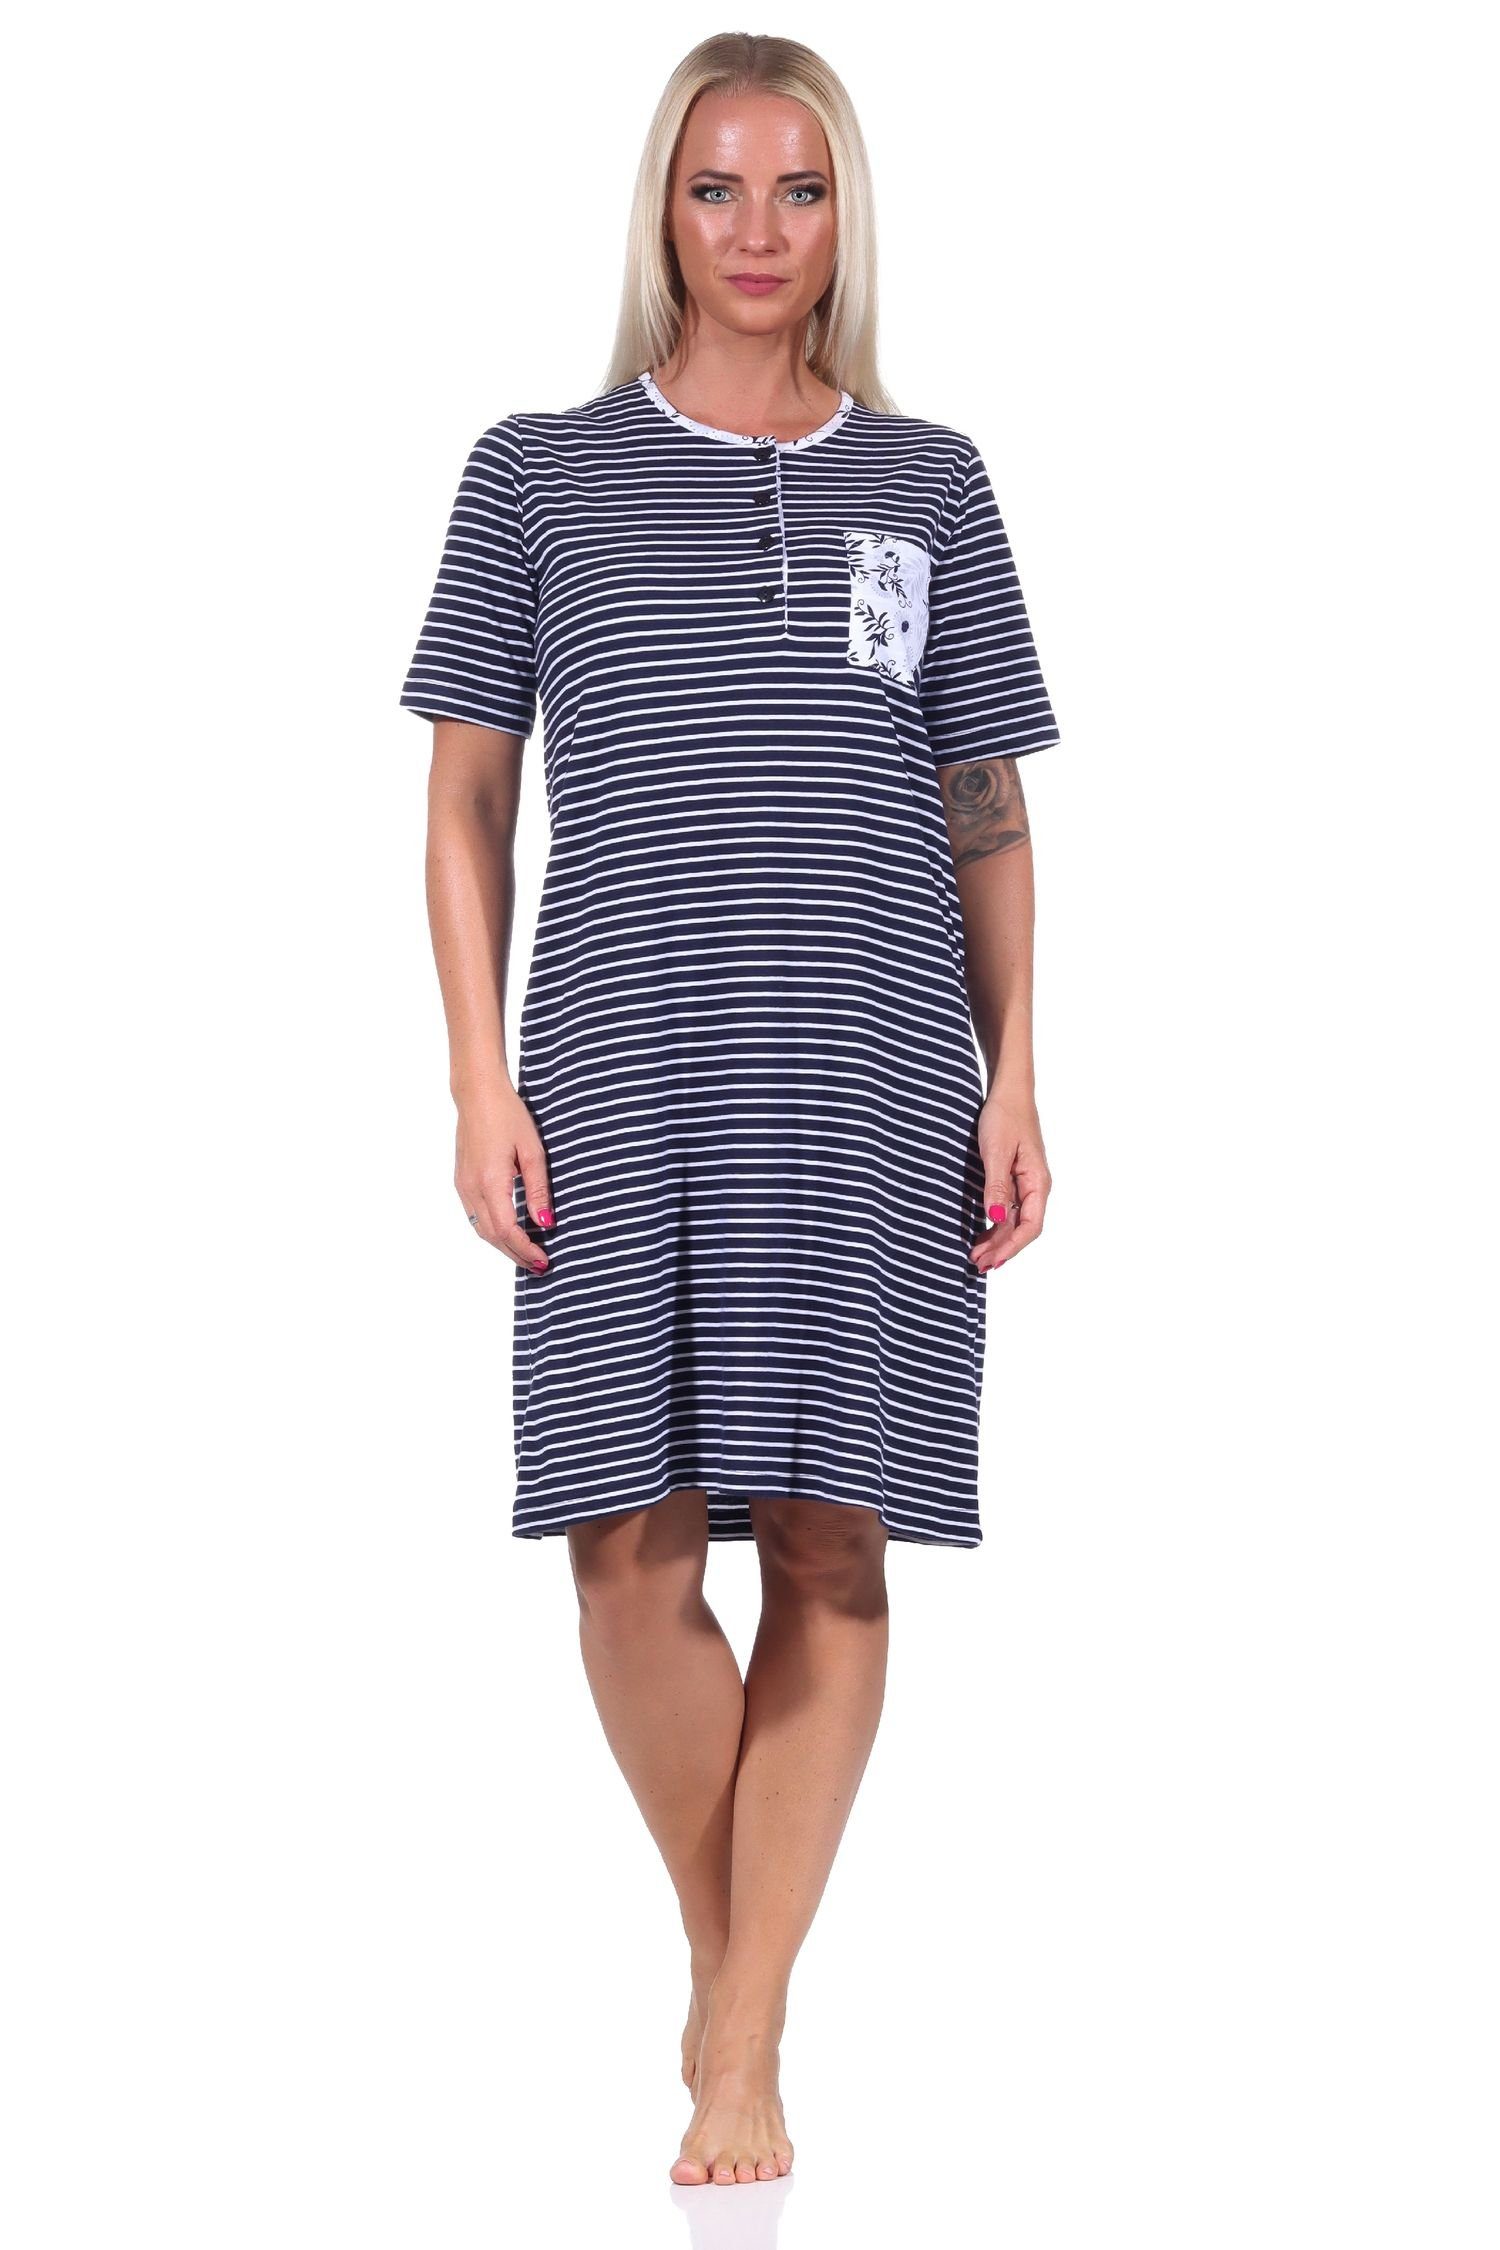 Nachthemd mit Nachthemd Knopfleiste Streifenoptik in kurzarm Hals am marine Damen Normann